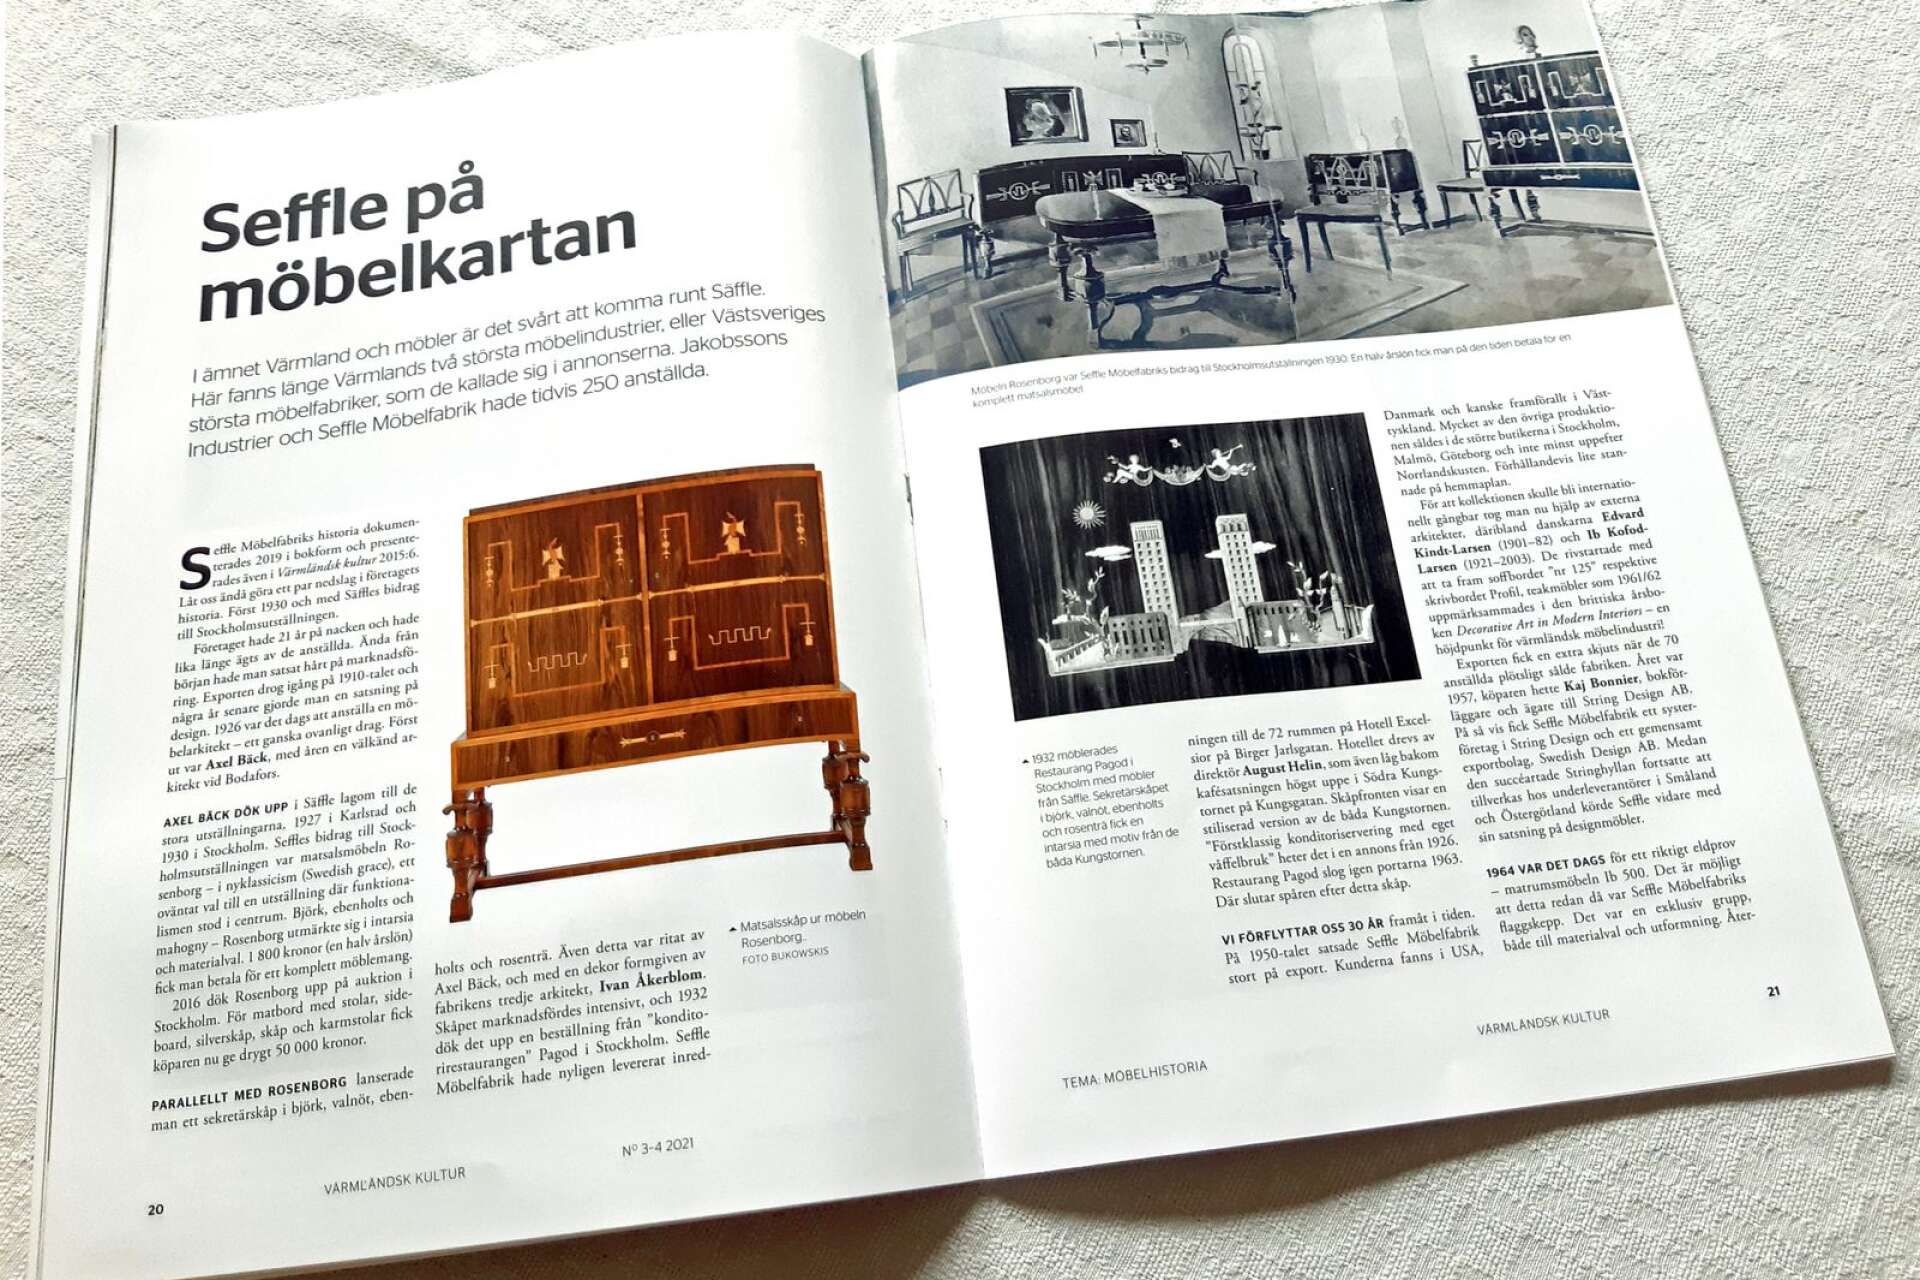 Värmländsk möbelindustri handlar i hög grad om möbler från Säffle, vars två möbelfabriker en gång tillsammans hade cirka 250 anställda.